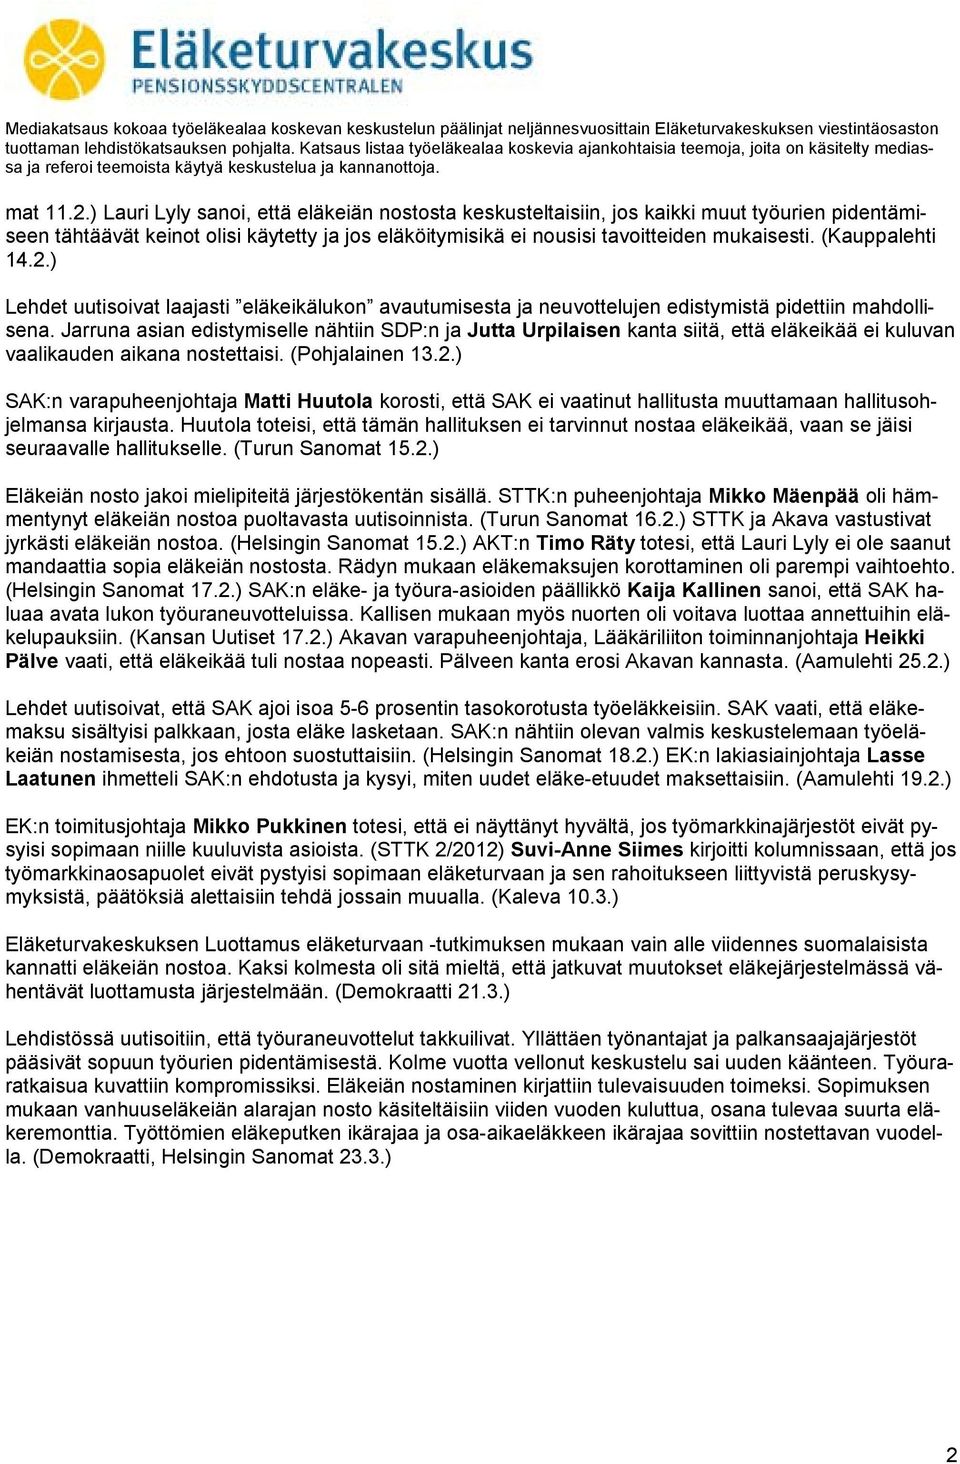 Jarruna asian edistymiselle nähtiin SDP:n ja Jutta Urpilaisen kanta siitä, että eläkeikää ei kuluvan vaalikauden aikana nostettaisi. (Pohjalainen 13.2.